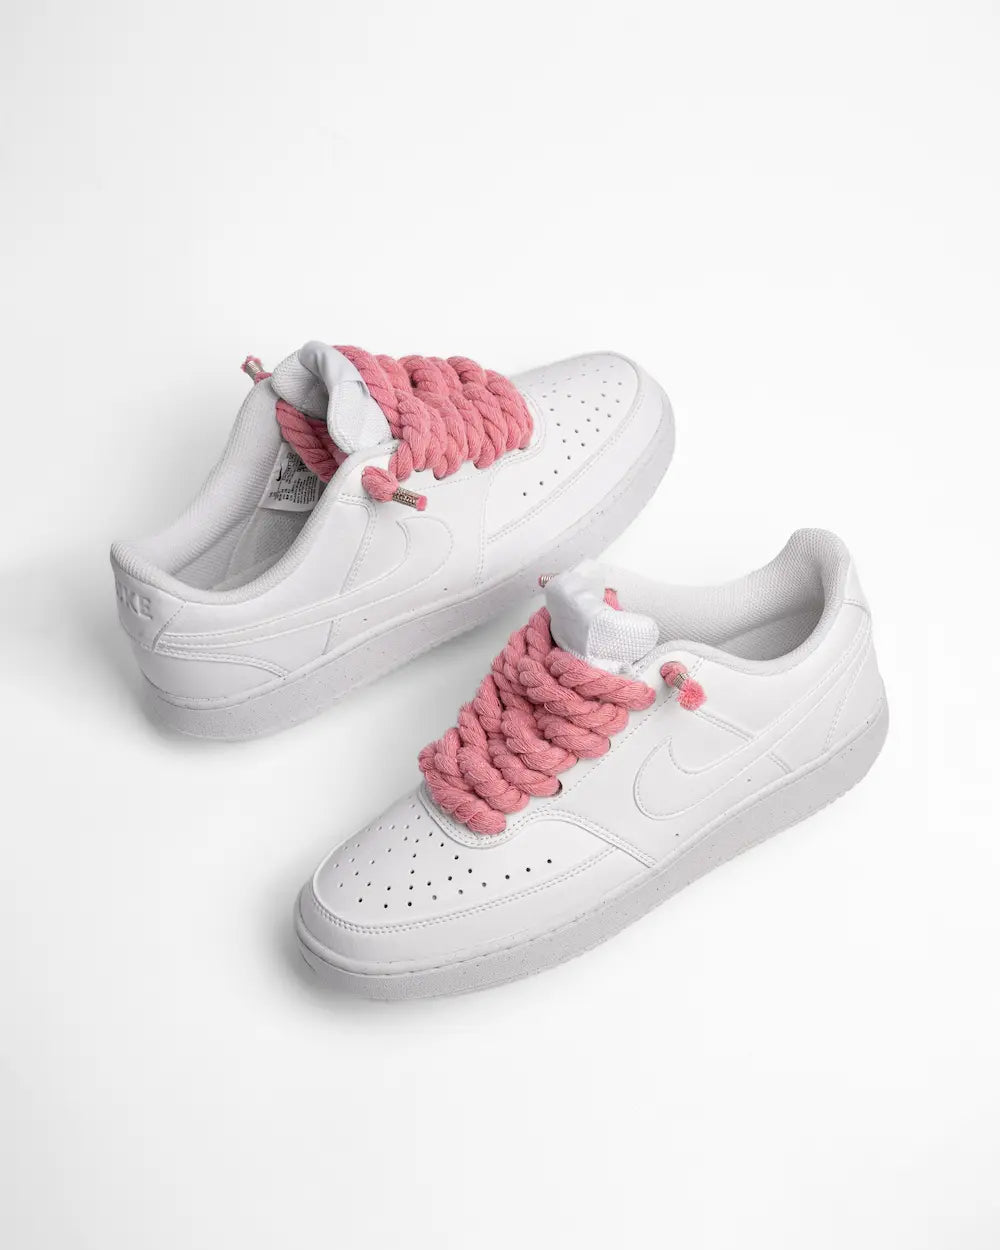 Nike Court Vision personalizzata con lacci in corda rosa pastello